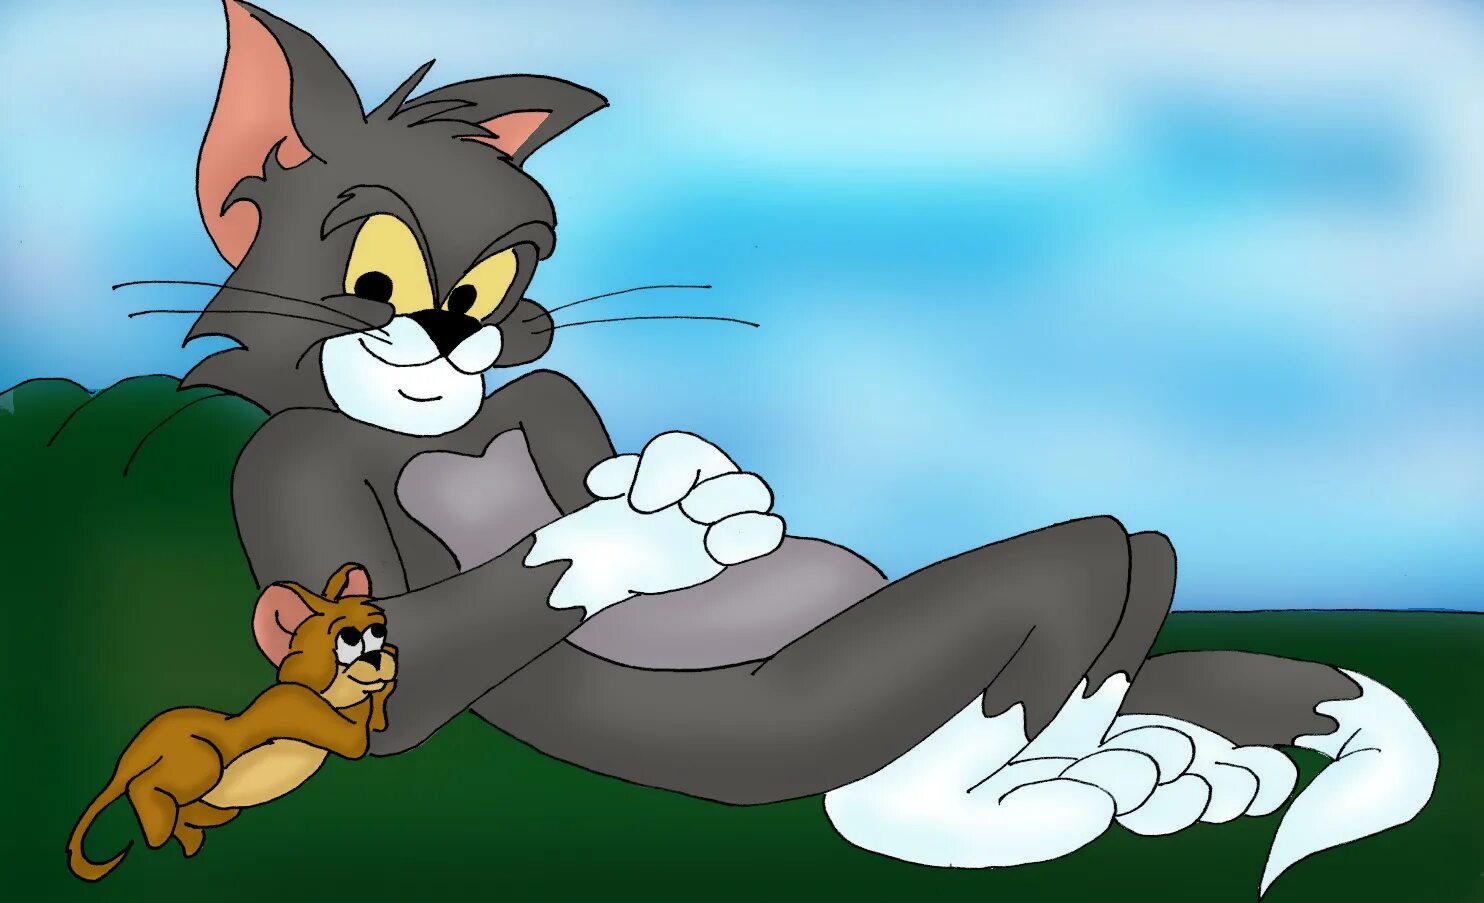 Jerry том и джерри. Том и Джерри Tom and Jerry. Tom and Jerry кот том. Tom and Jerry 1961.